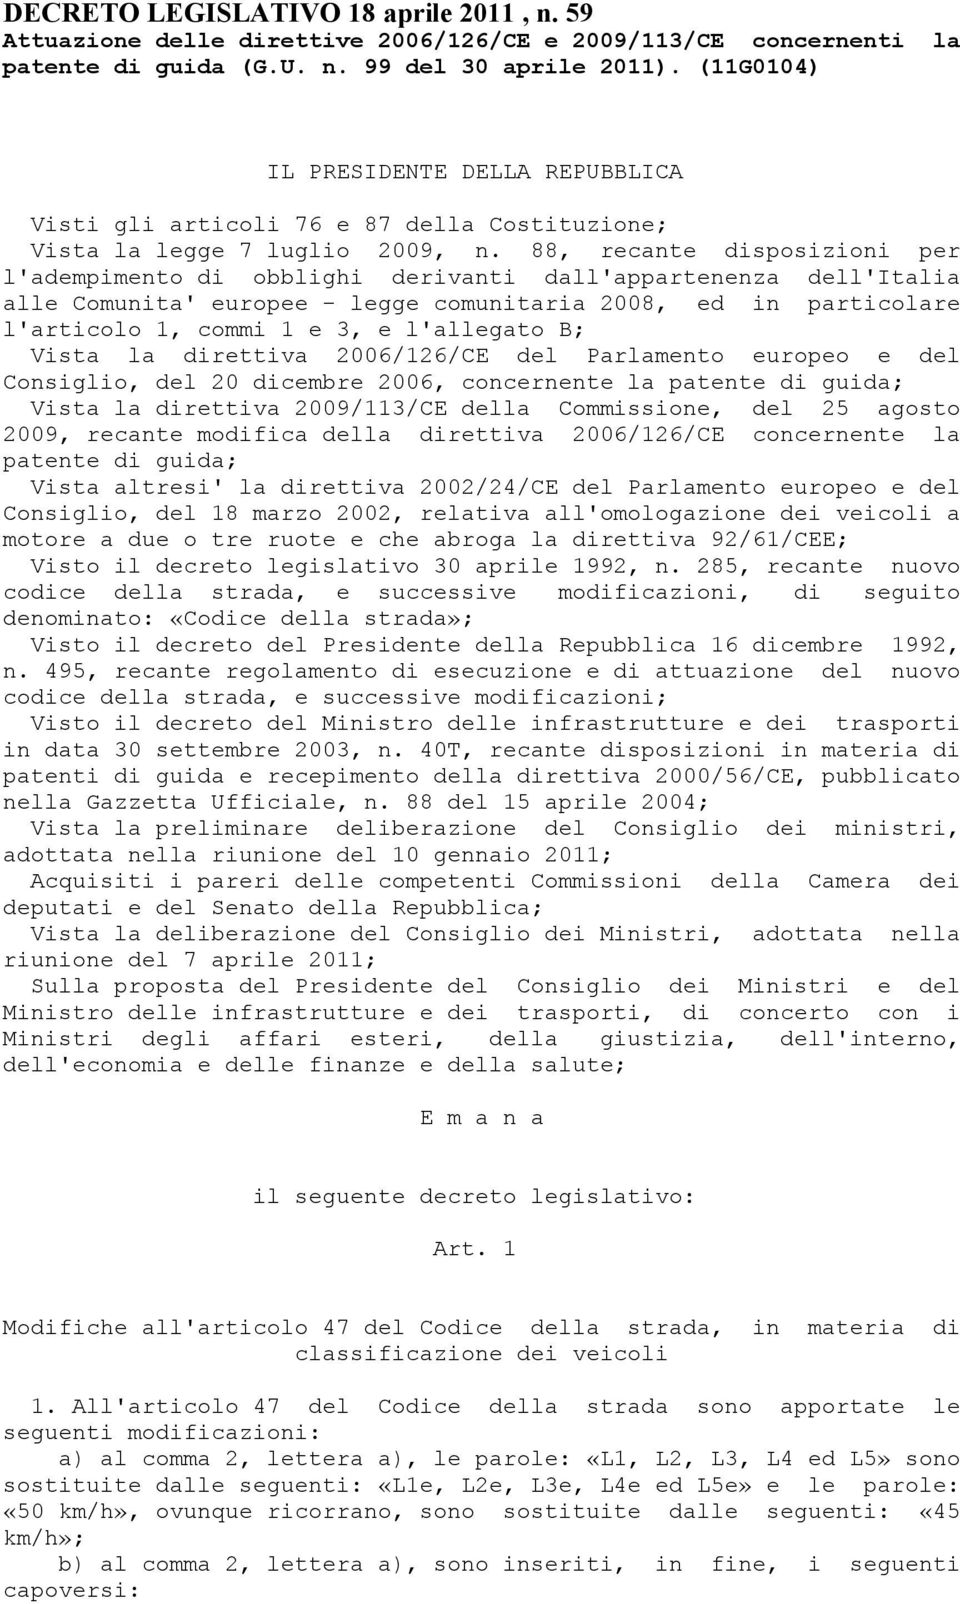 88, recante disposizioni per l'adempimento di obblighi derivanti dall'appartenenza dell'italia alle Comunita' europee - legge comunitaria 2008, ed in particolare l'articolo 1, commi 1 e 3, e